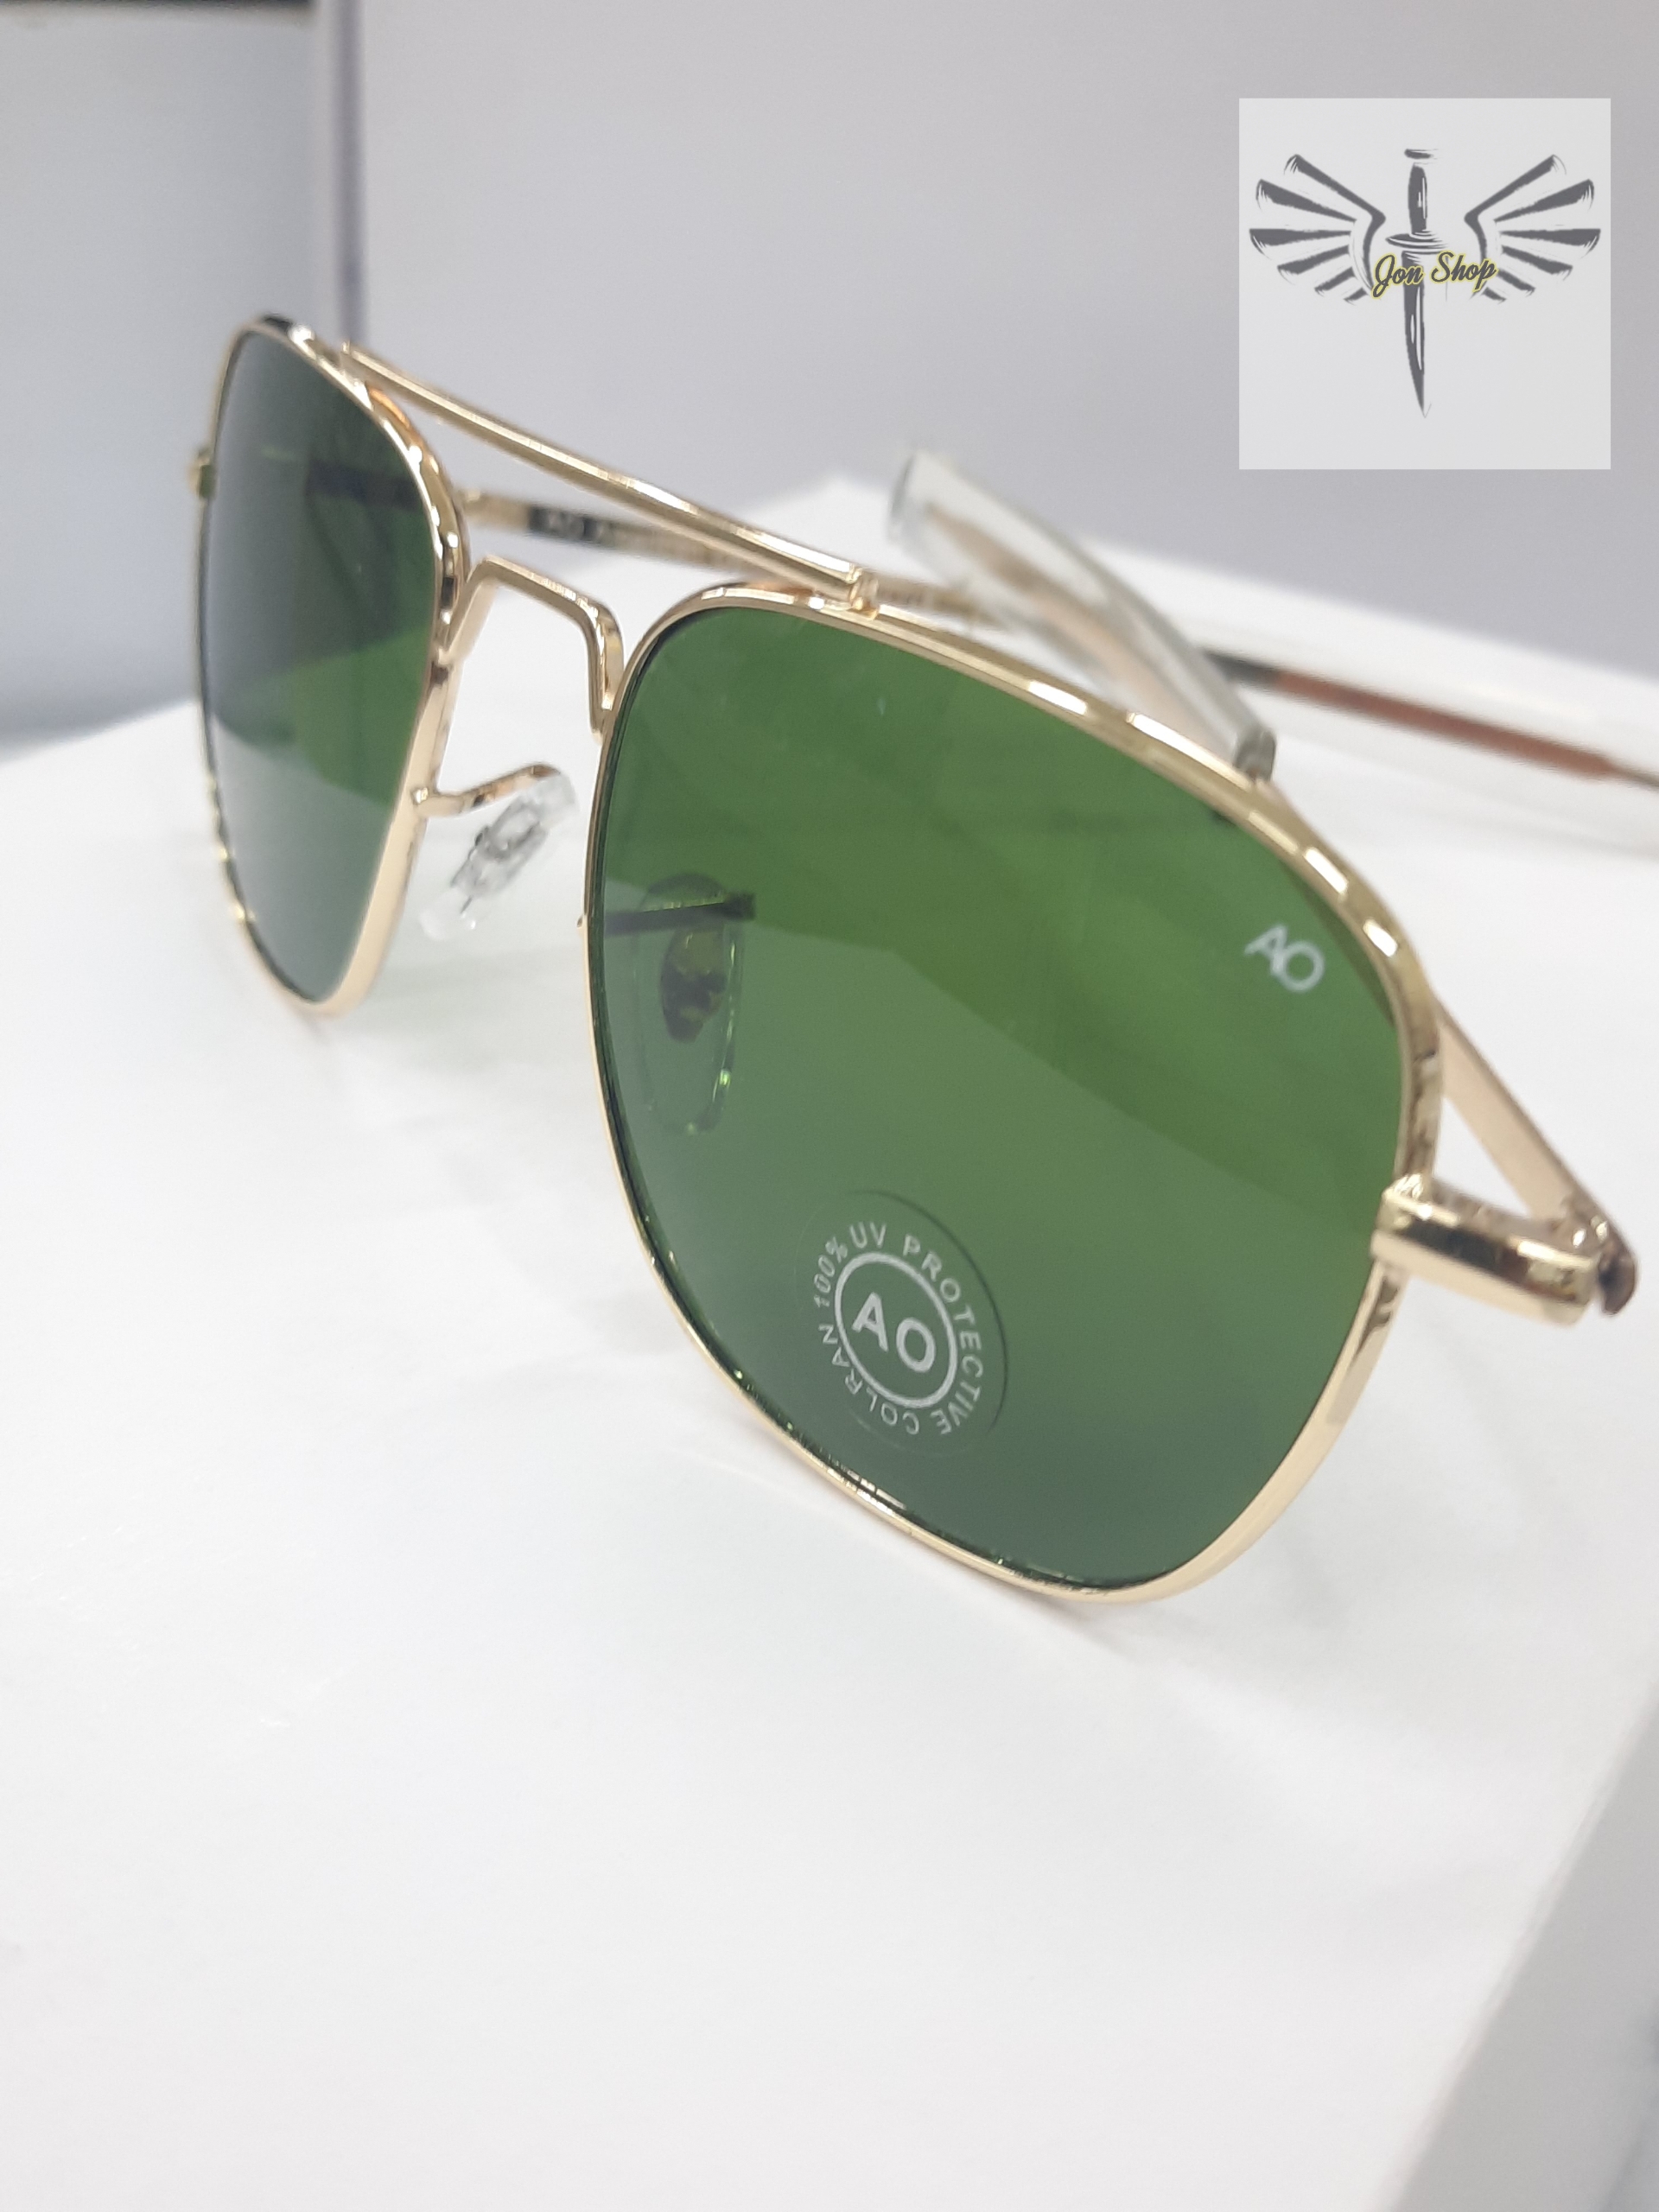 แว่นตา AOแท้ป้องกัน UV 400 แบบขาตรง เลนส์กระจก กรอบสีทอง เลนส์สีเขียวอ่อน เป็นแว่นถนอมสายตา น้ำหนักเบา ใส่สบาย มีสินค้าพร้อมส่ง